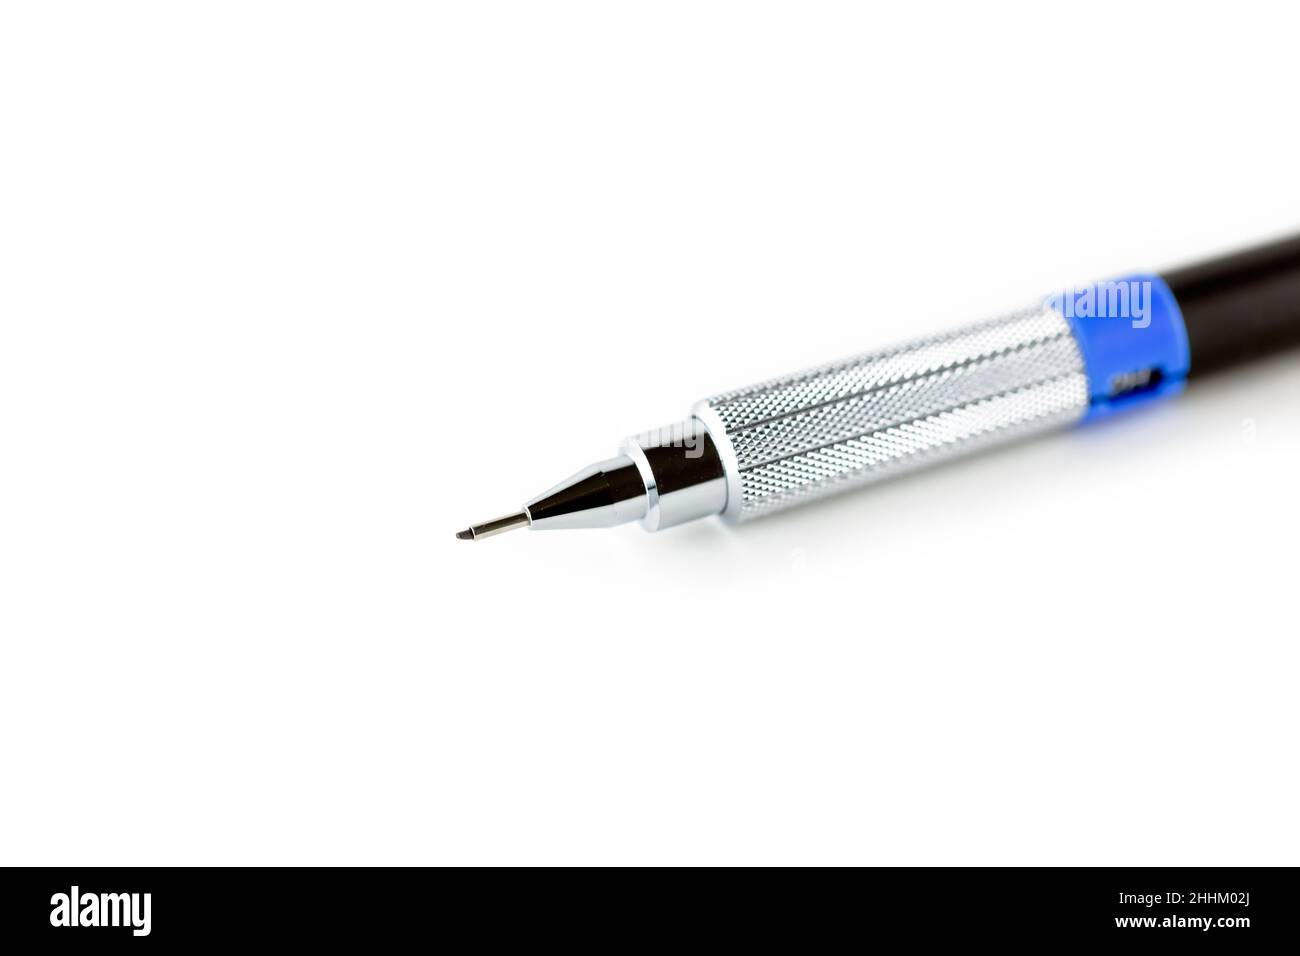 Una matita meccanica isolata su sfondo bianco. Immagine ritagliata per uso editoriale ed illustrativo Foto Stock